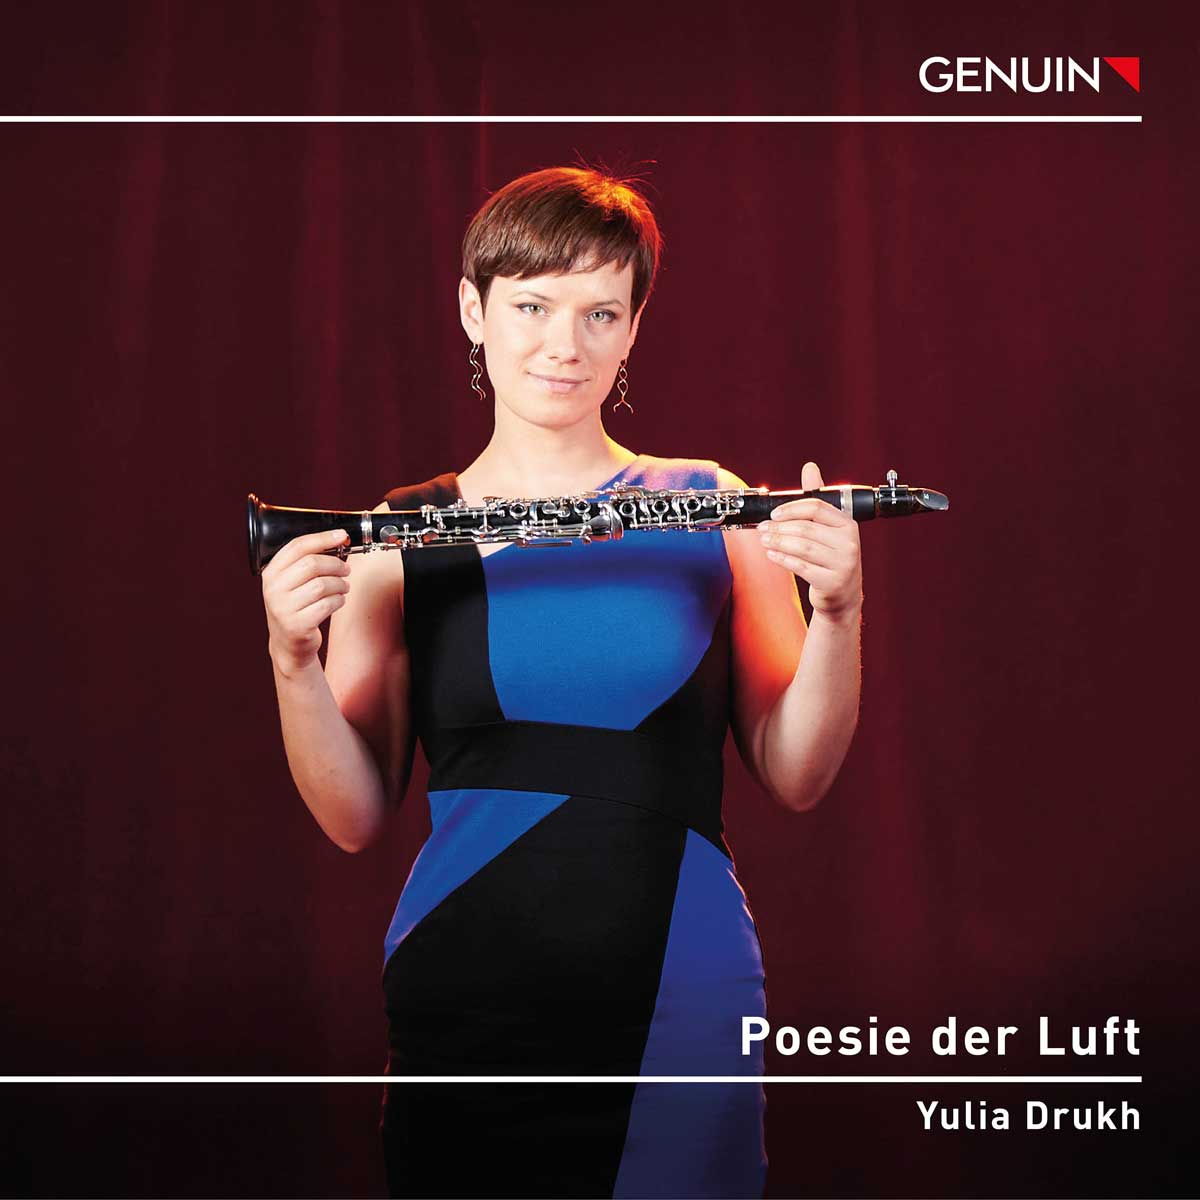 CD album cover 'Poesie der Luft' (GEN 23831) with Yulia Drukh